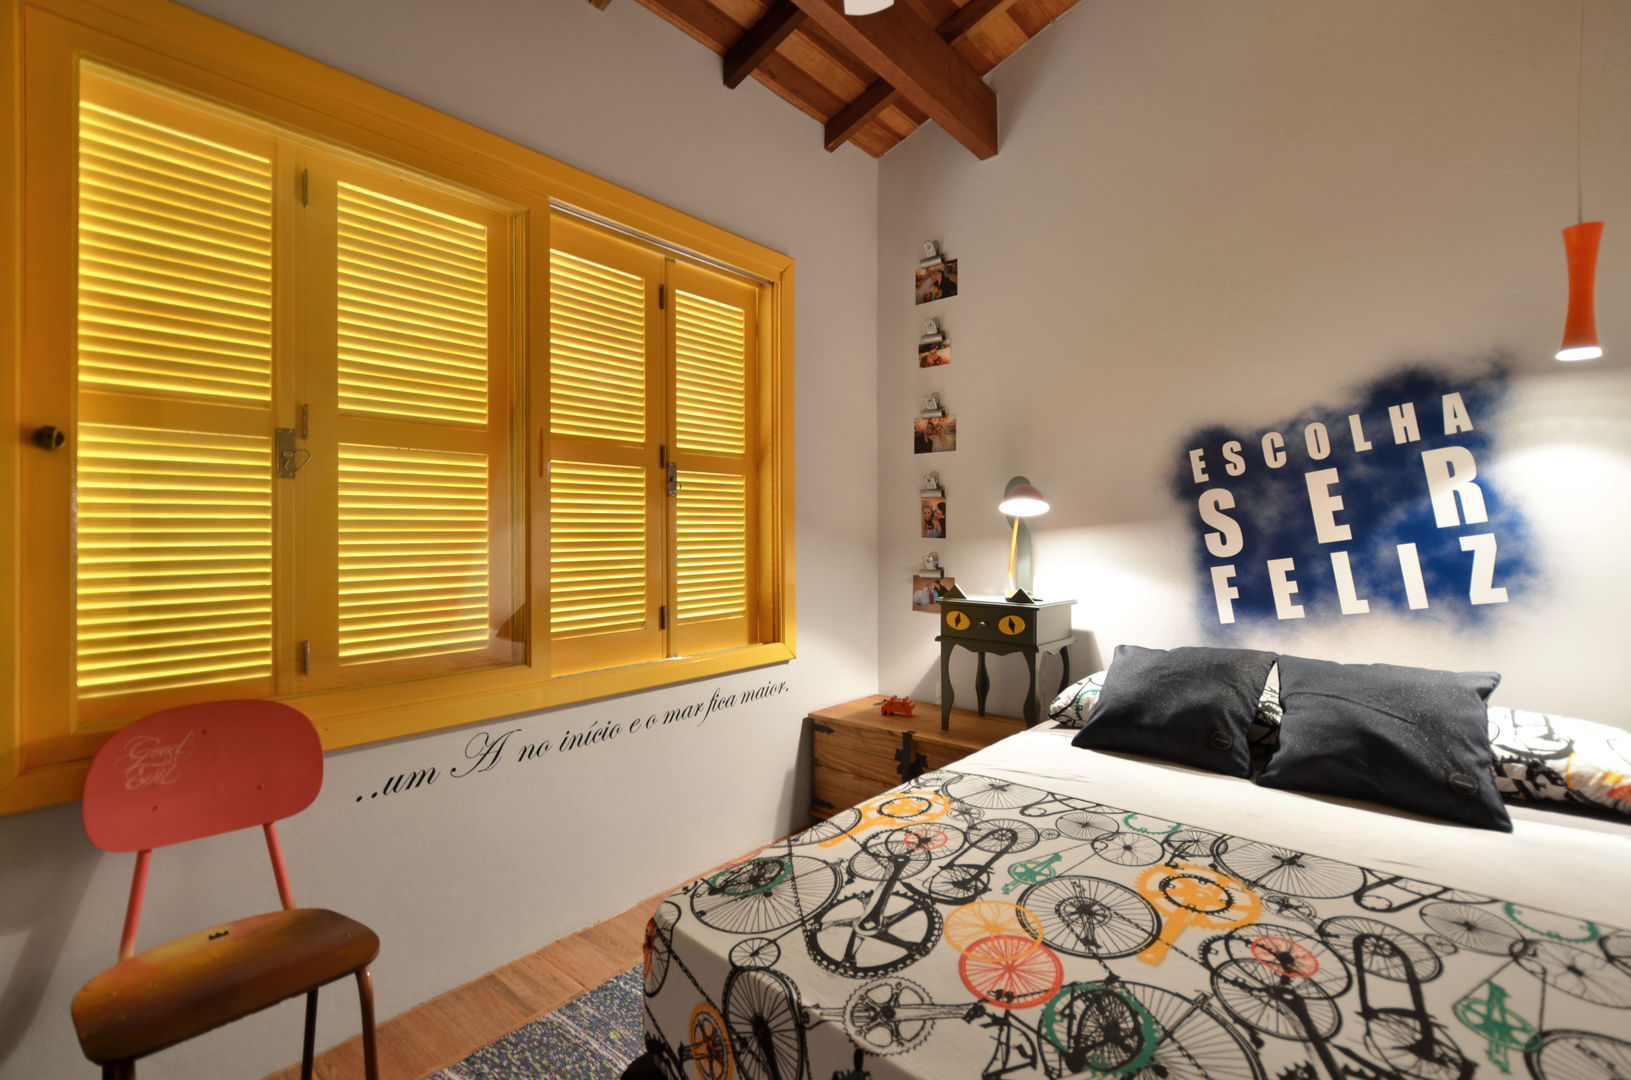 BEACH HOUSE, Arquitetando ideias Arquitetando ideias Tropical style bedroom